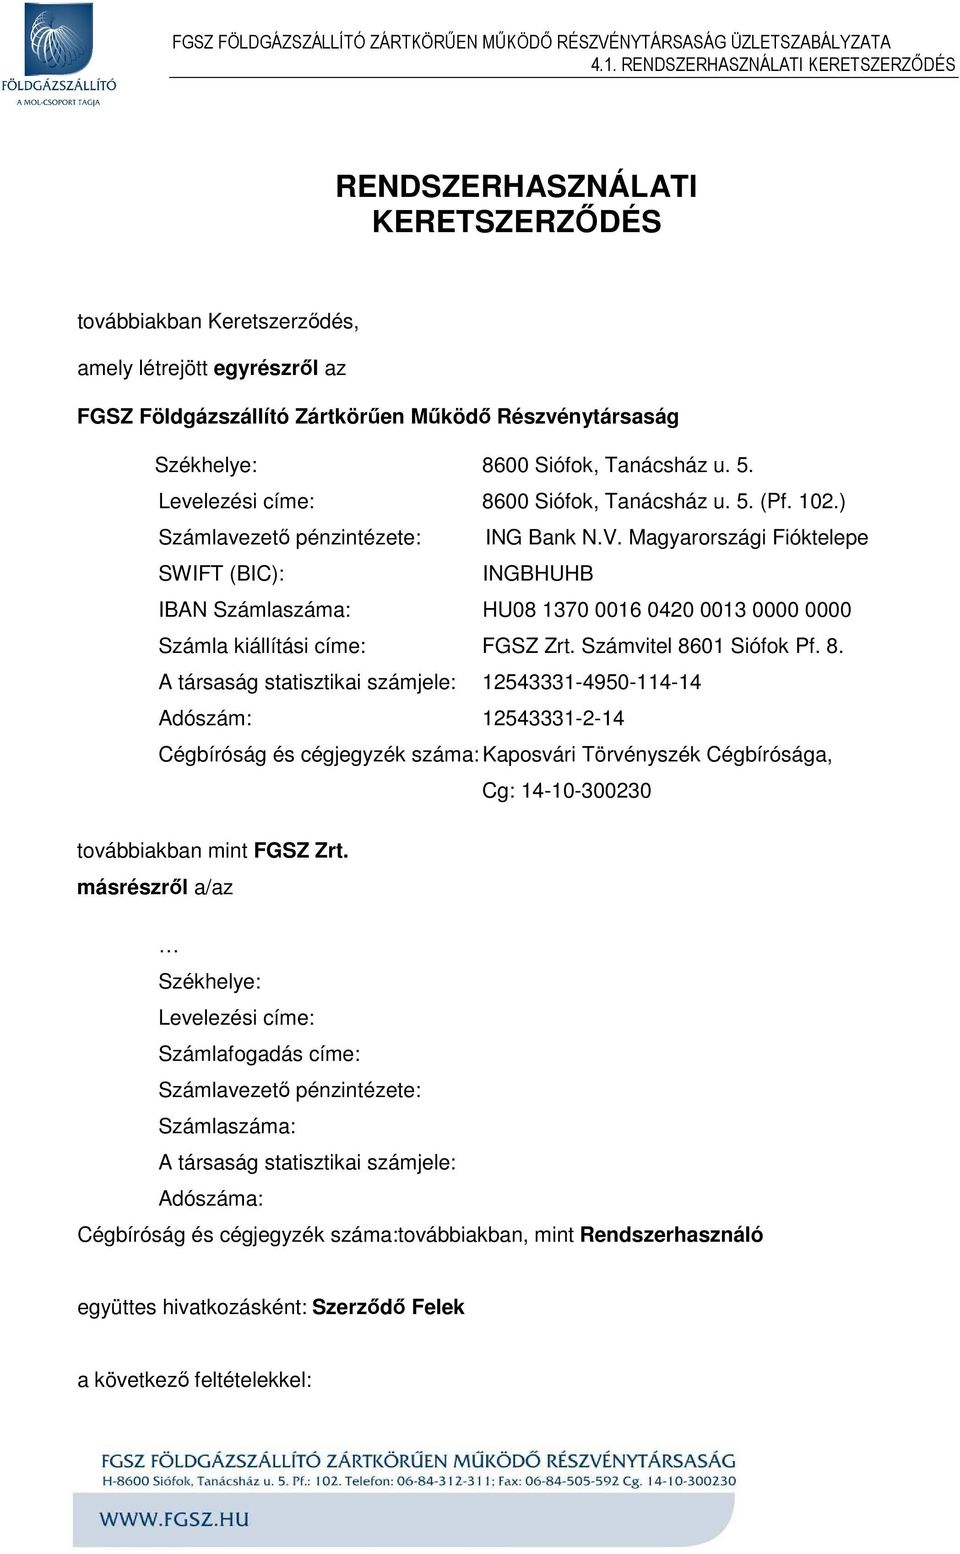 Magyarországi Fióktelepe SWIFT (BIC): INGBHUHB IBAN Számlaszáma: HU08 1370 0016 0420 0013 0000 0000 Számla kiállítási címe: FGSZ Zrt. Számvitel 86